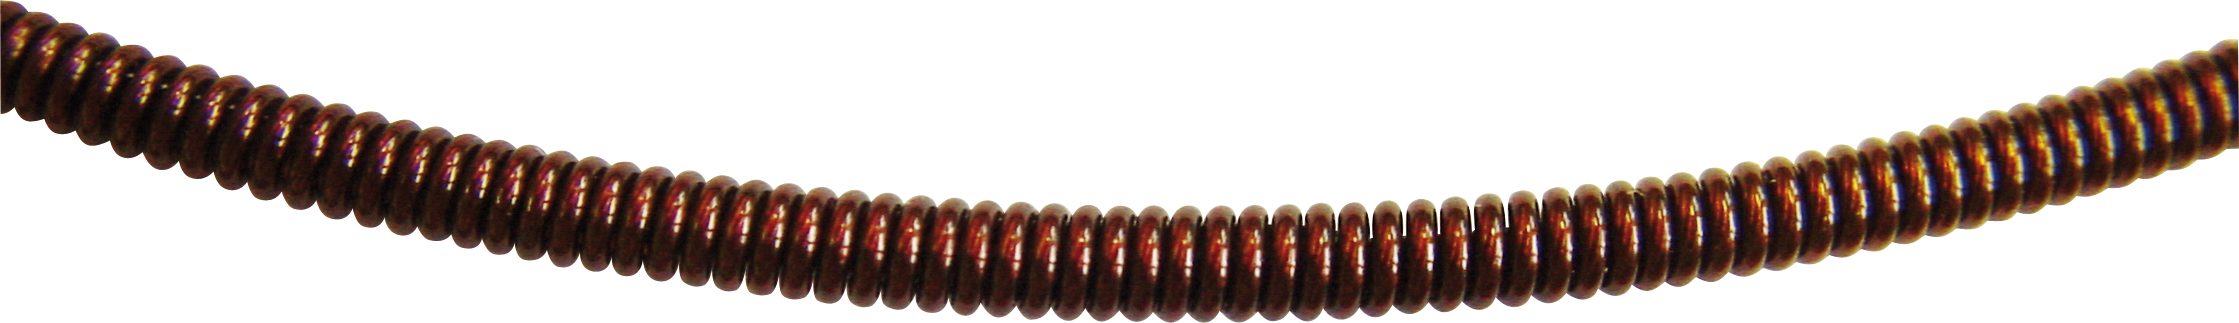 Łańcuch spirala z powlekanej tworzywem sztucznym stali nierdzewnej brązowa z zapięciem bagnetowym (srebro), Ø 2,80mm  długość 42,00cm